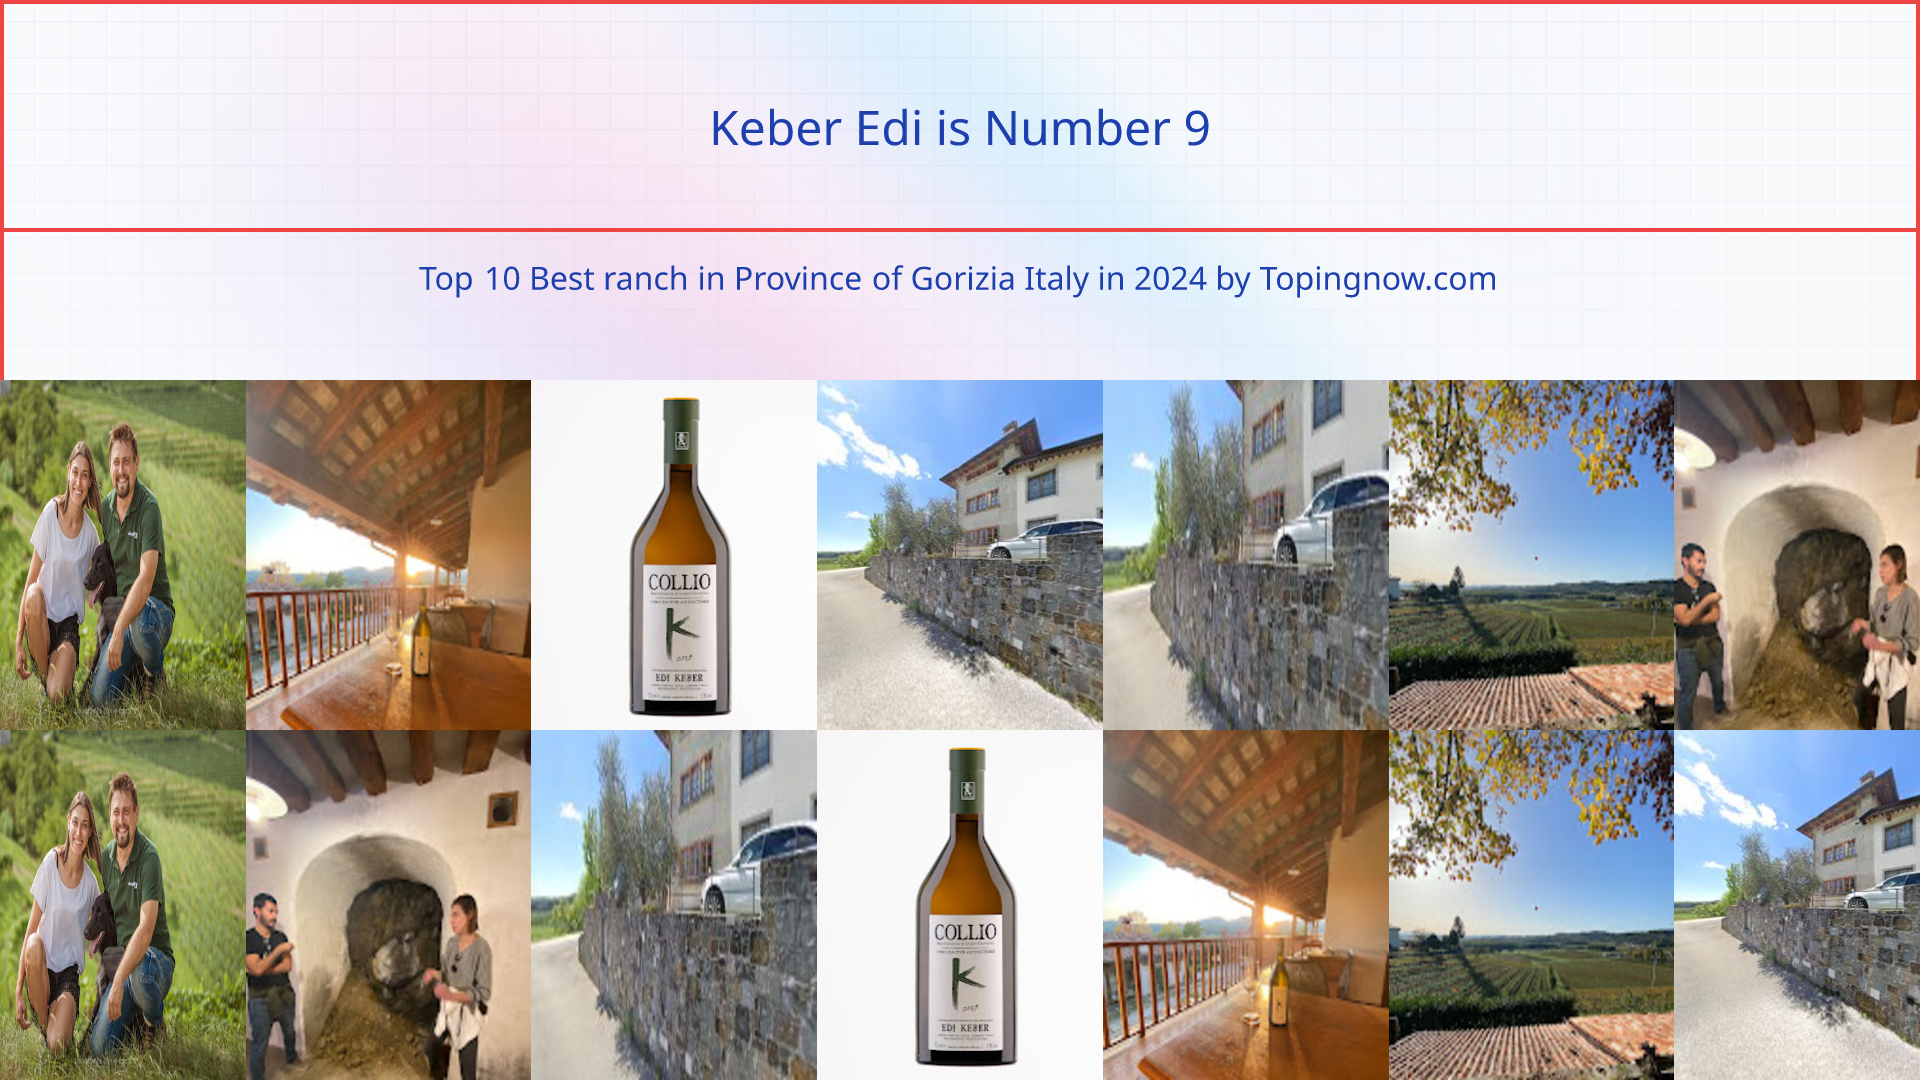 Keber Edi: Top 10 Best ranch in Province of Gorizia Italy in 2024